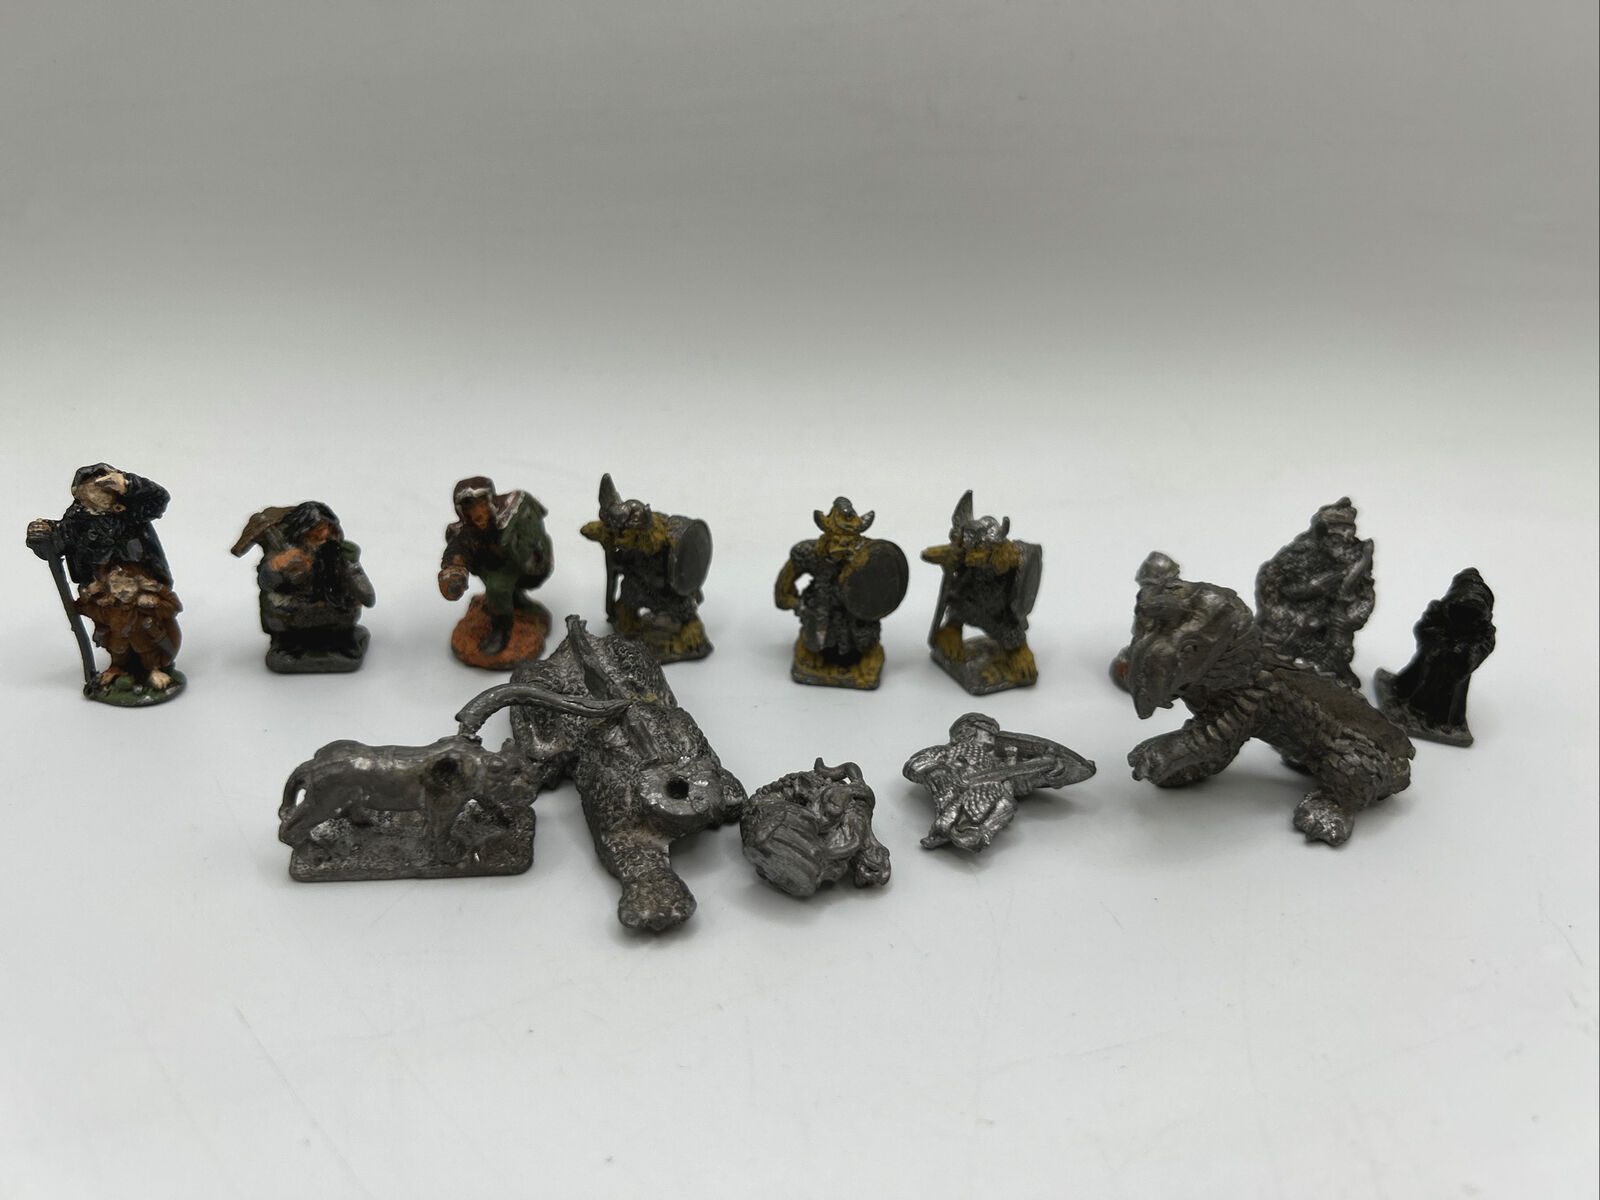 Small Metal Pewter Silver Figures - Vikings Vintage - 13 Figures